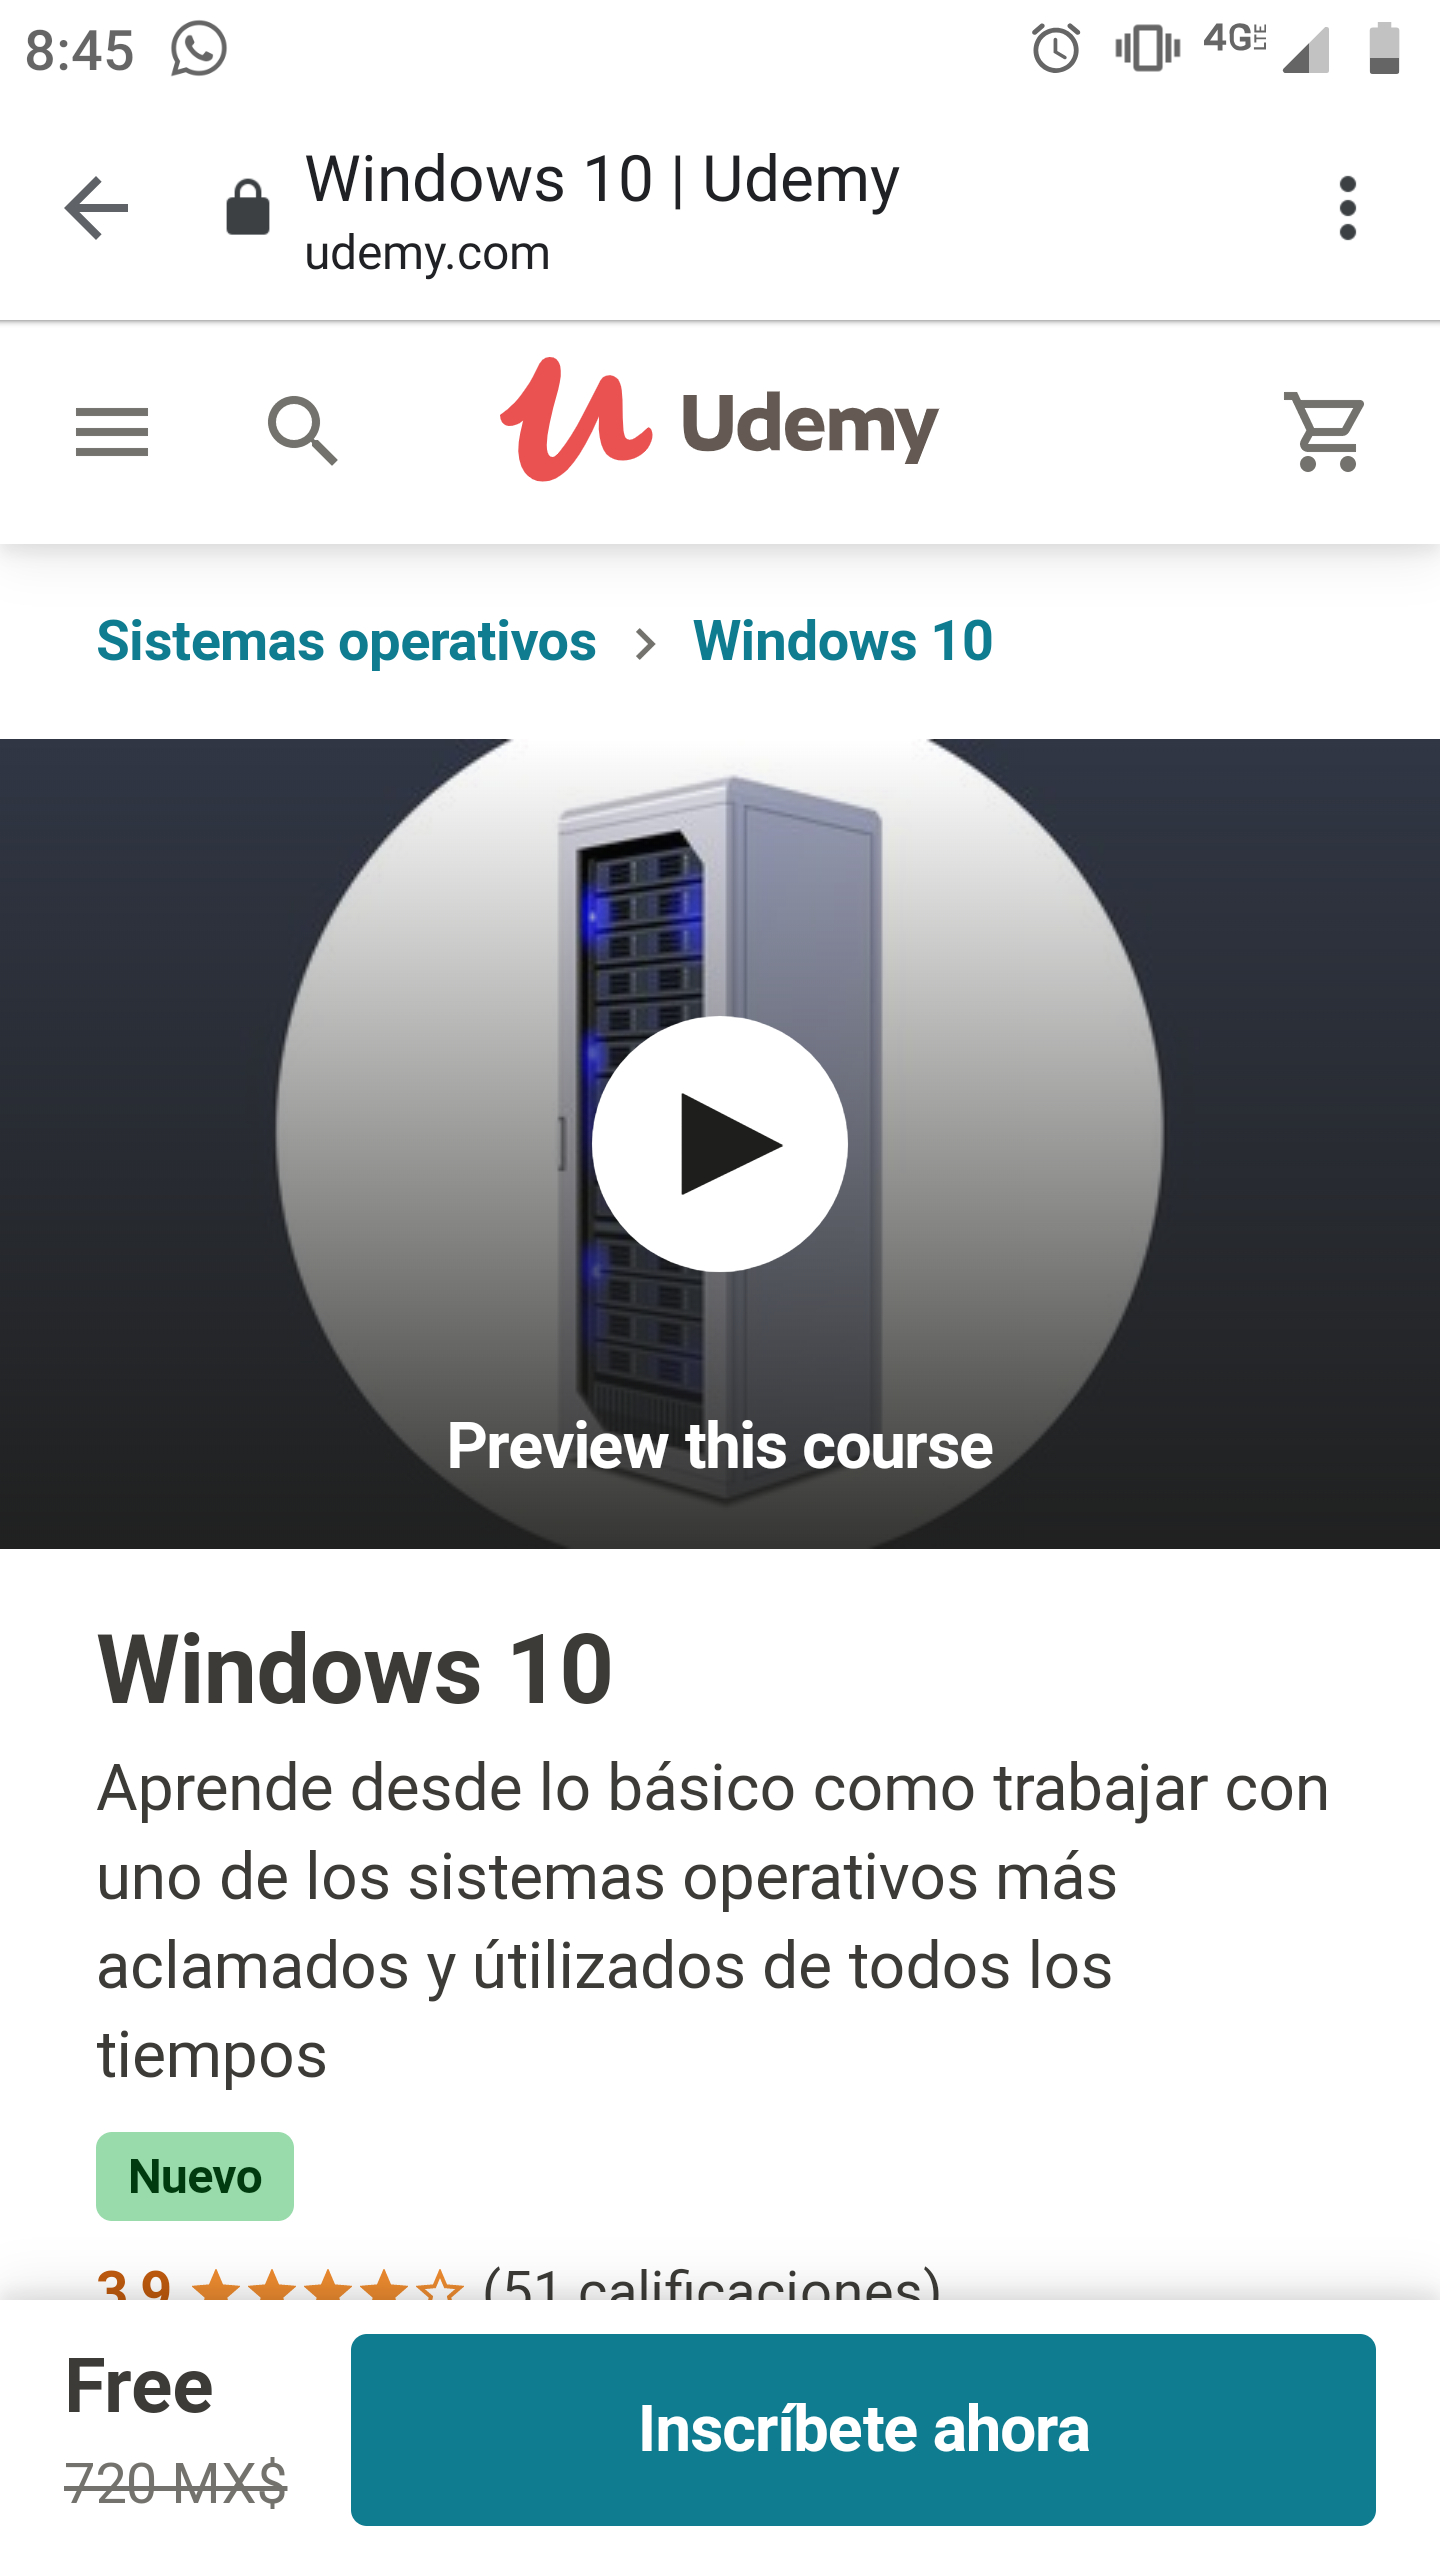 Udemy: Curso de Windows 10 - promodescuentos.com